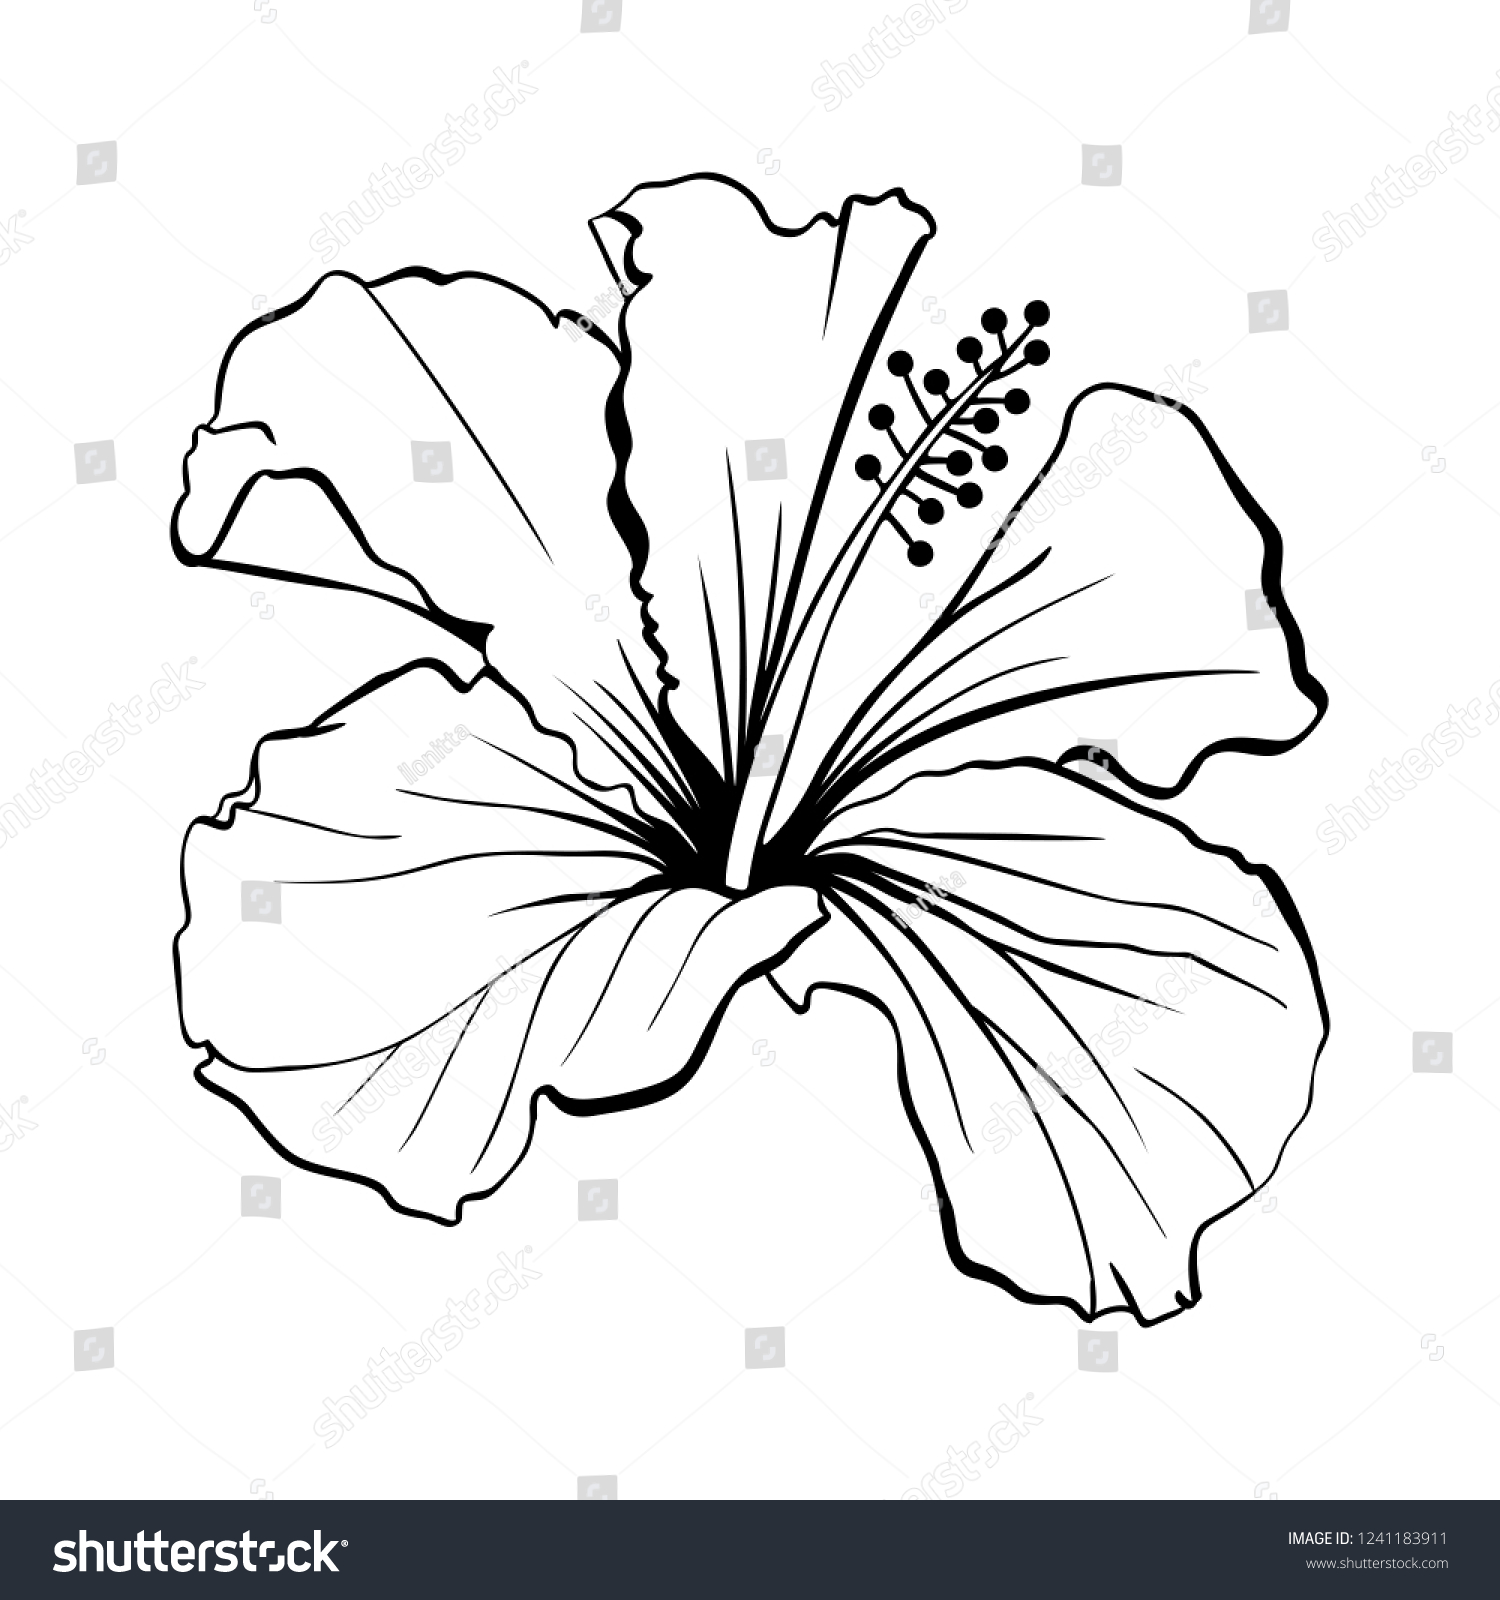 ハワイハイビスカスレーザーカットベクター画像 香りの輪郭の花 モロー シェニーズ ローズ 白黒植物花びらを持つ植物 熱帯のカルカードまたはビサップハーブティー 深紅の花 のベクター画像素材 ロイヤリティフリー